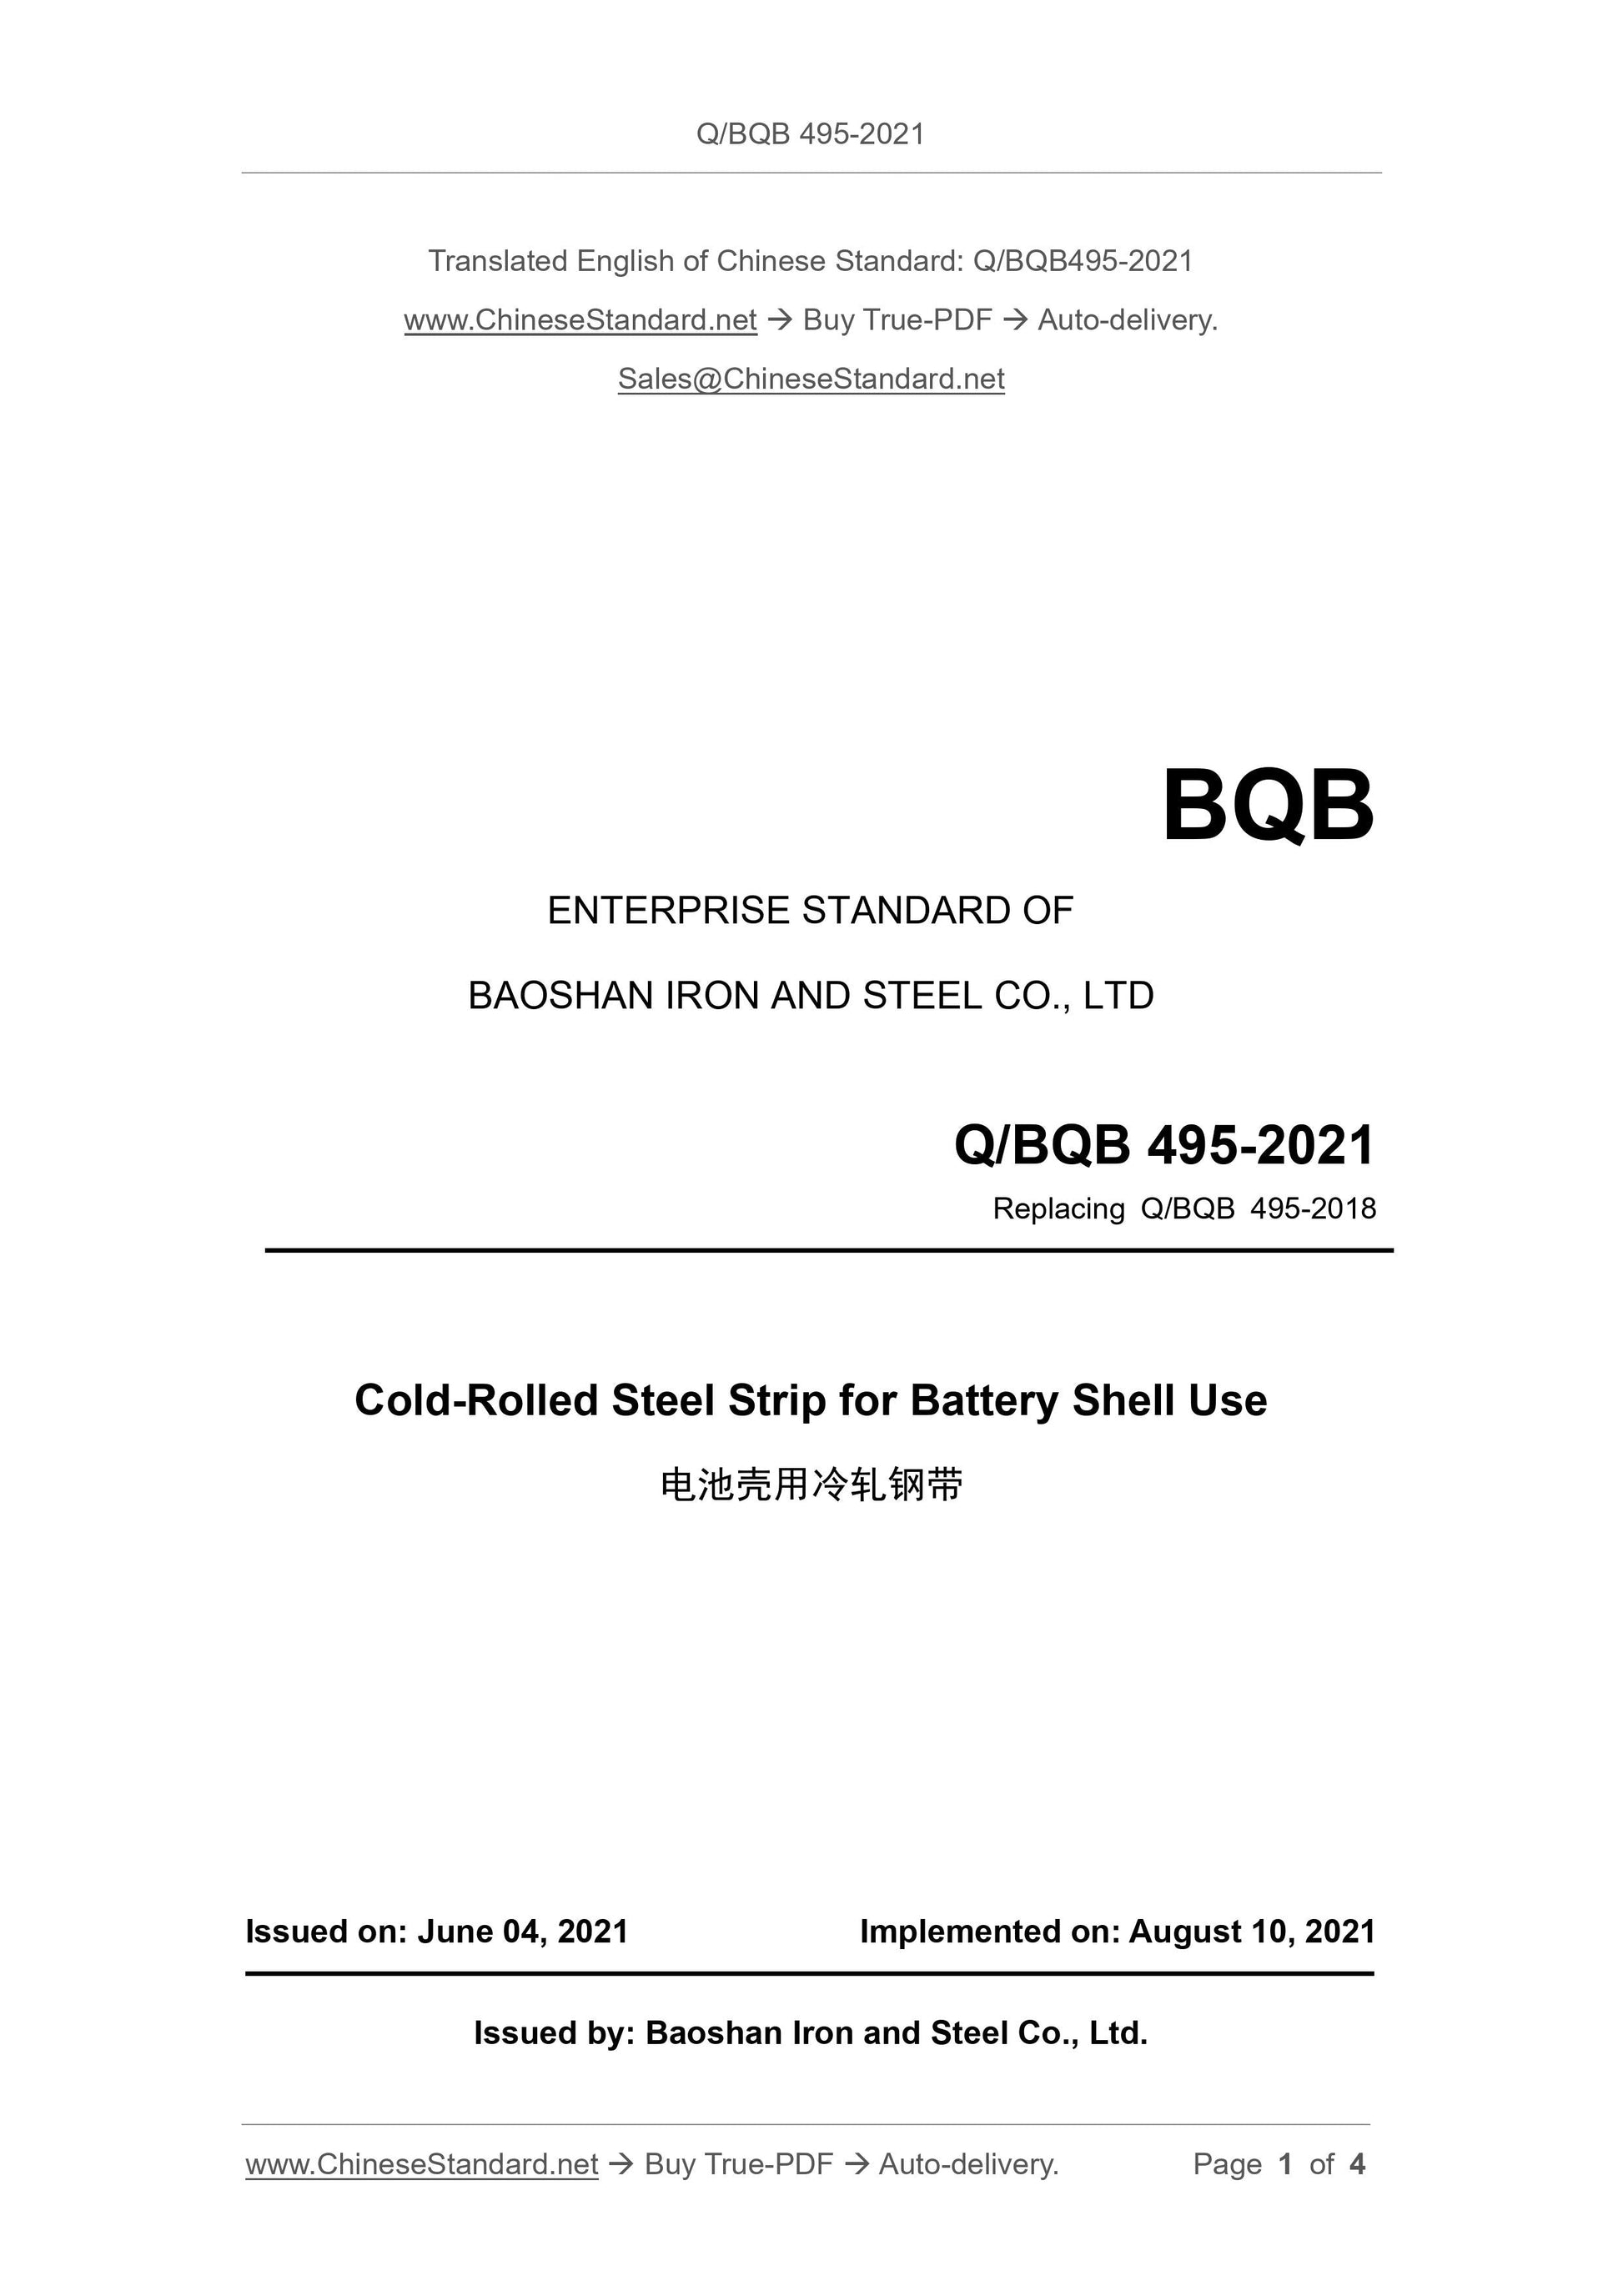 Q/BQB 495-2021 Page 1